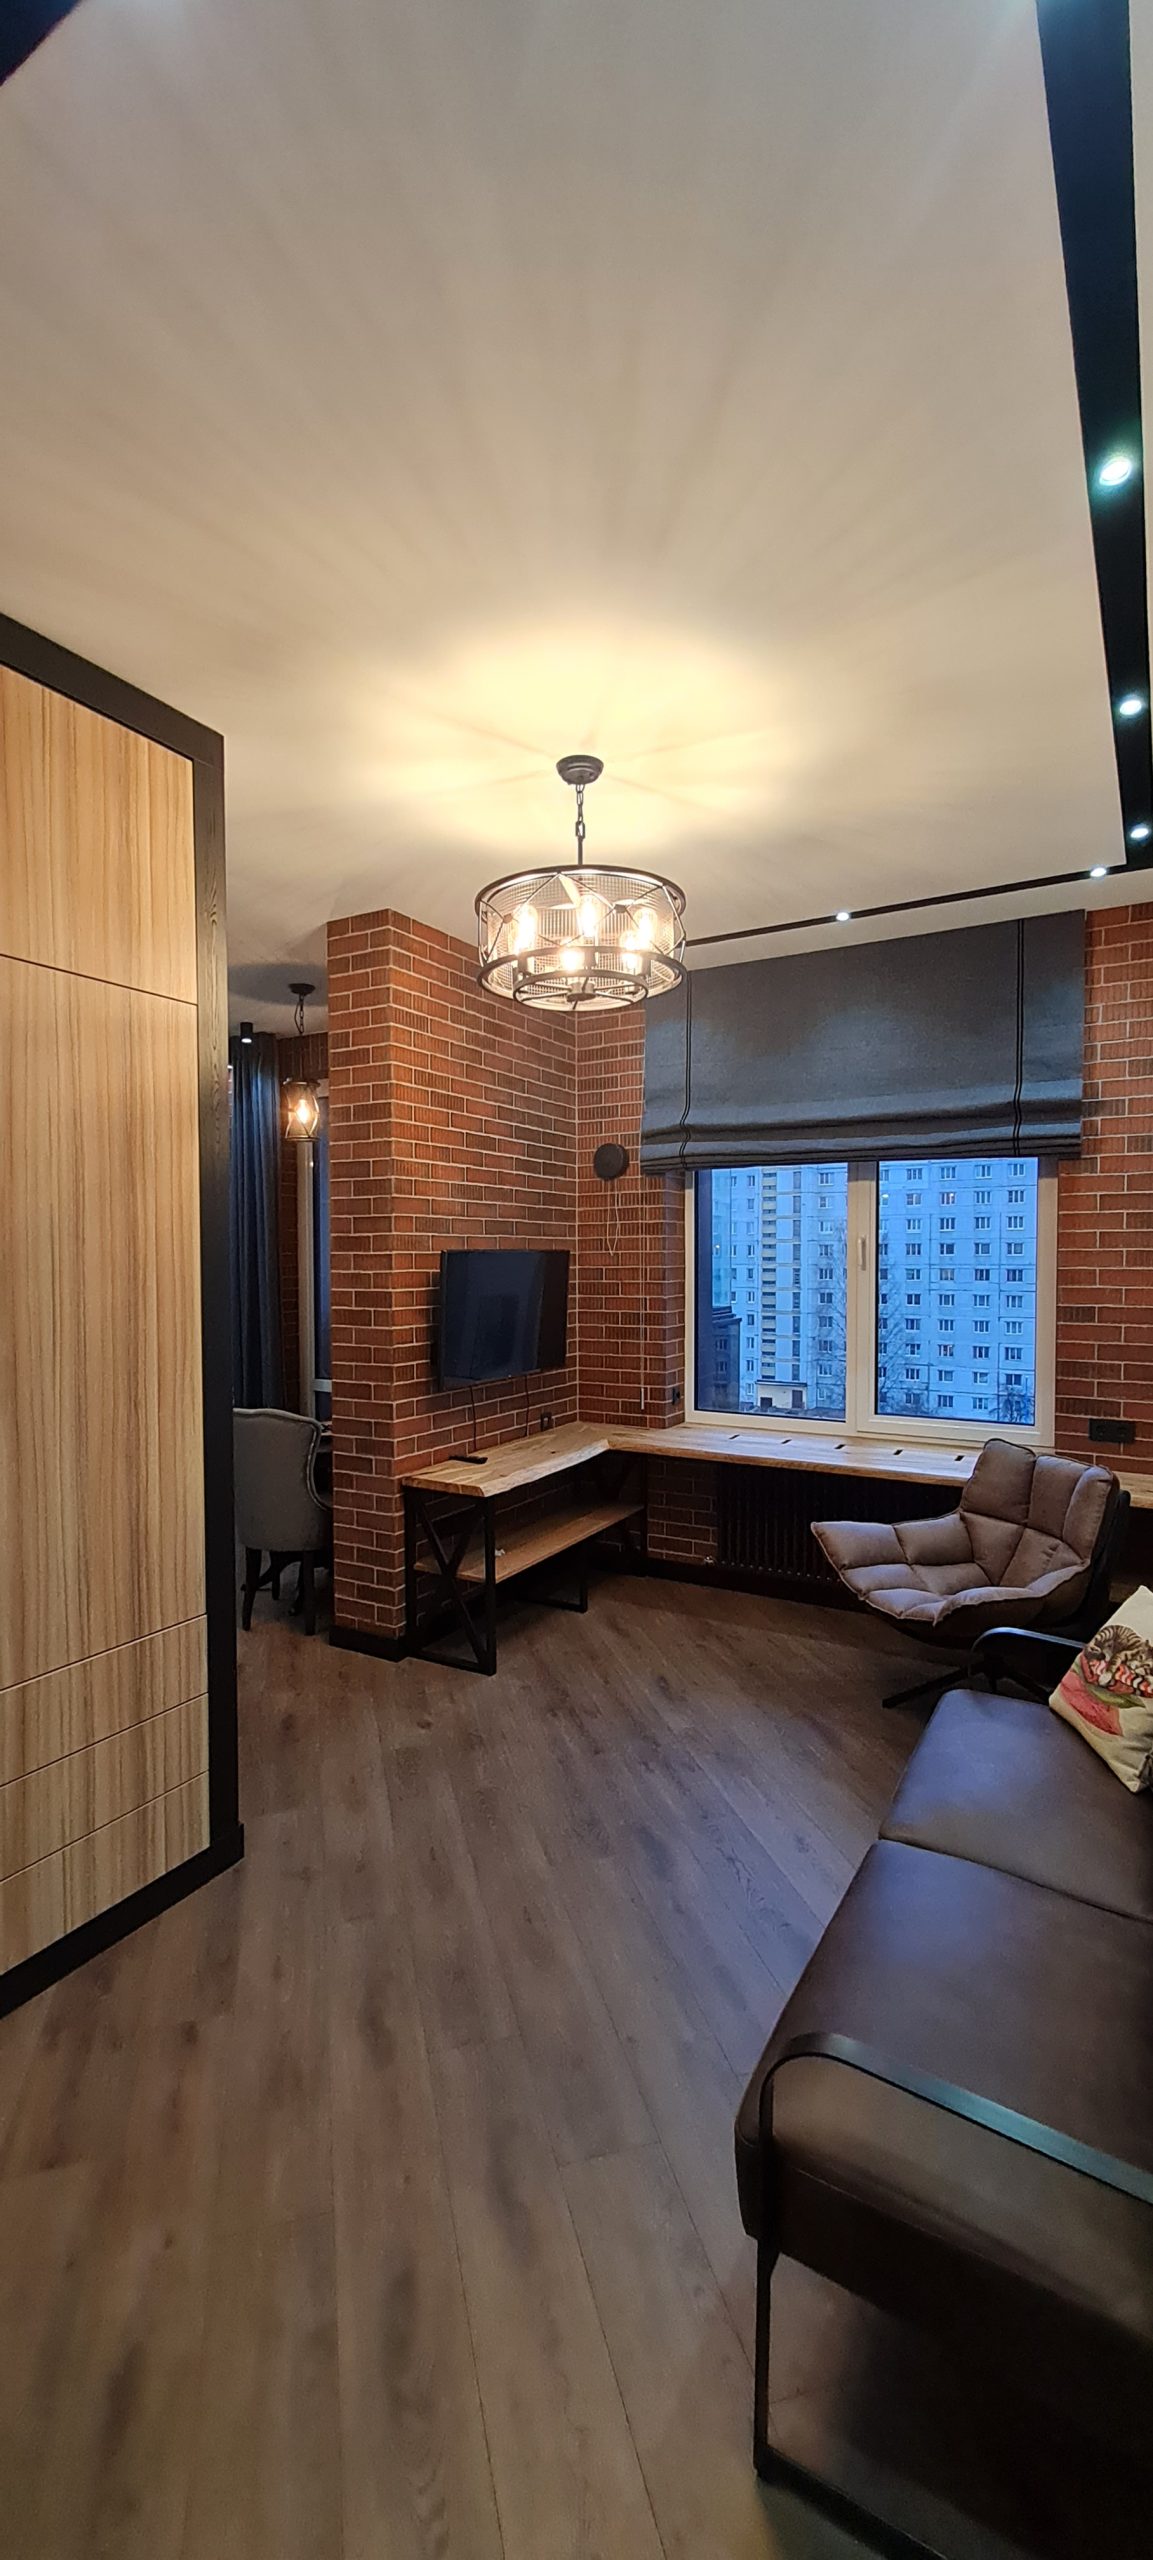 Продается элитная 1 комнатная квартира 39м2 в Московском районе в доме бизнес-класса ЖК «Москва».